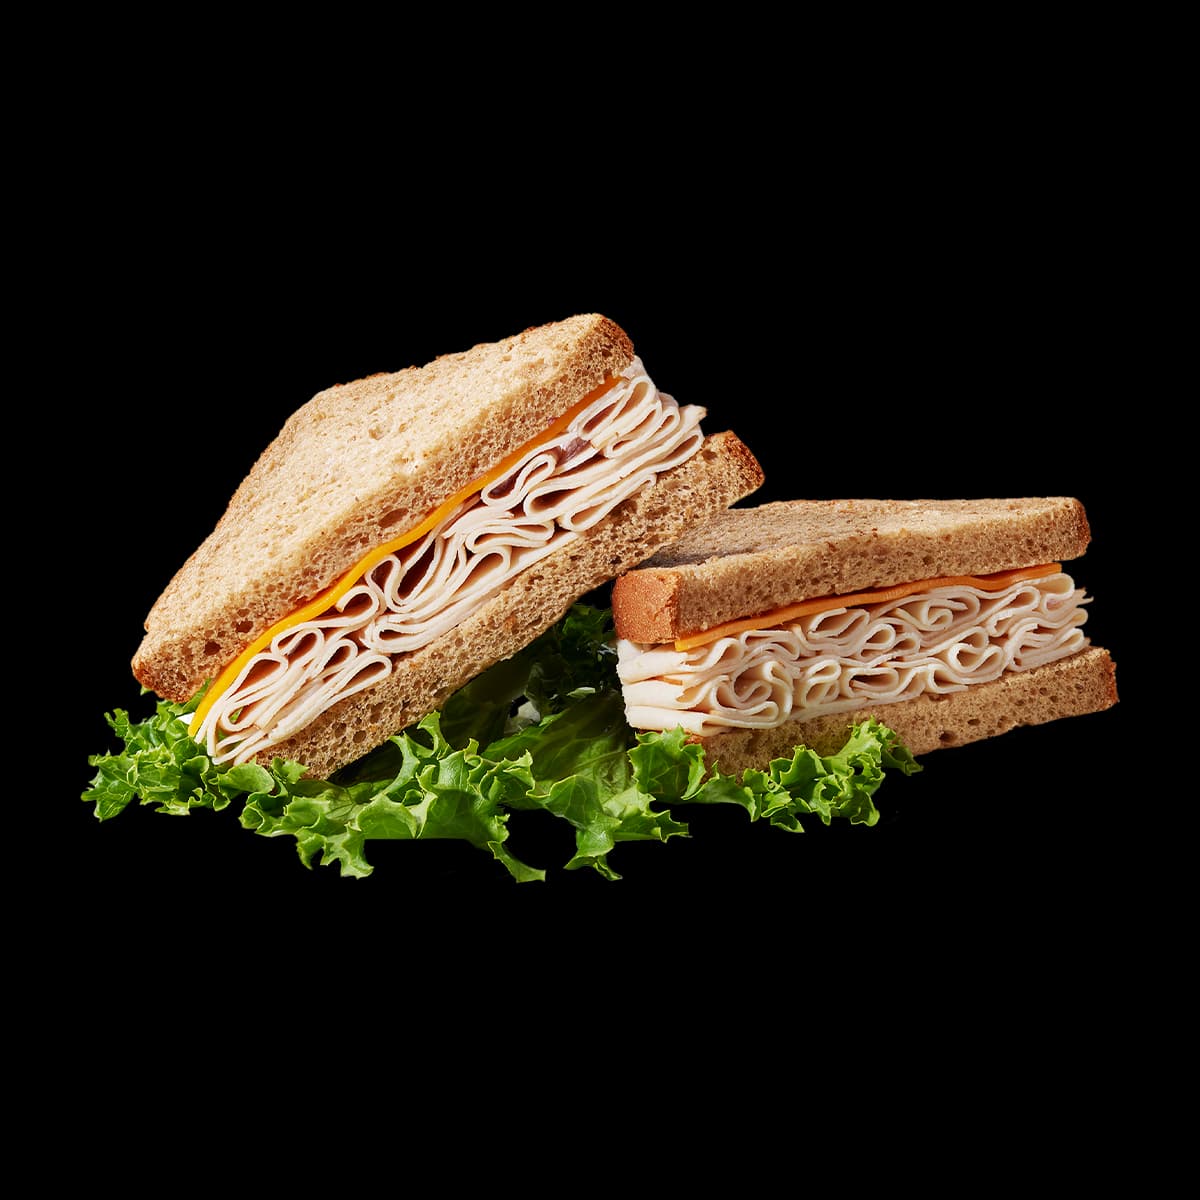 Turkey and Cheddar sandwich